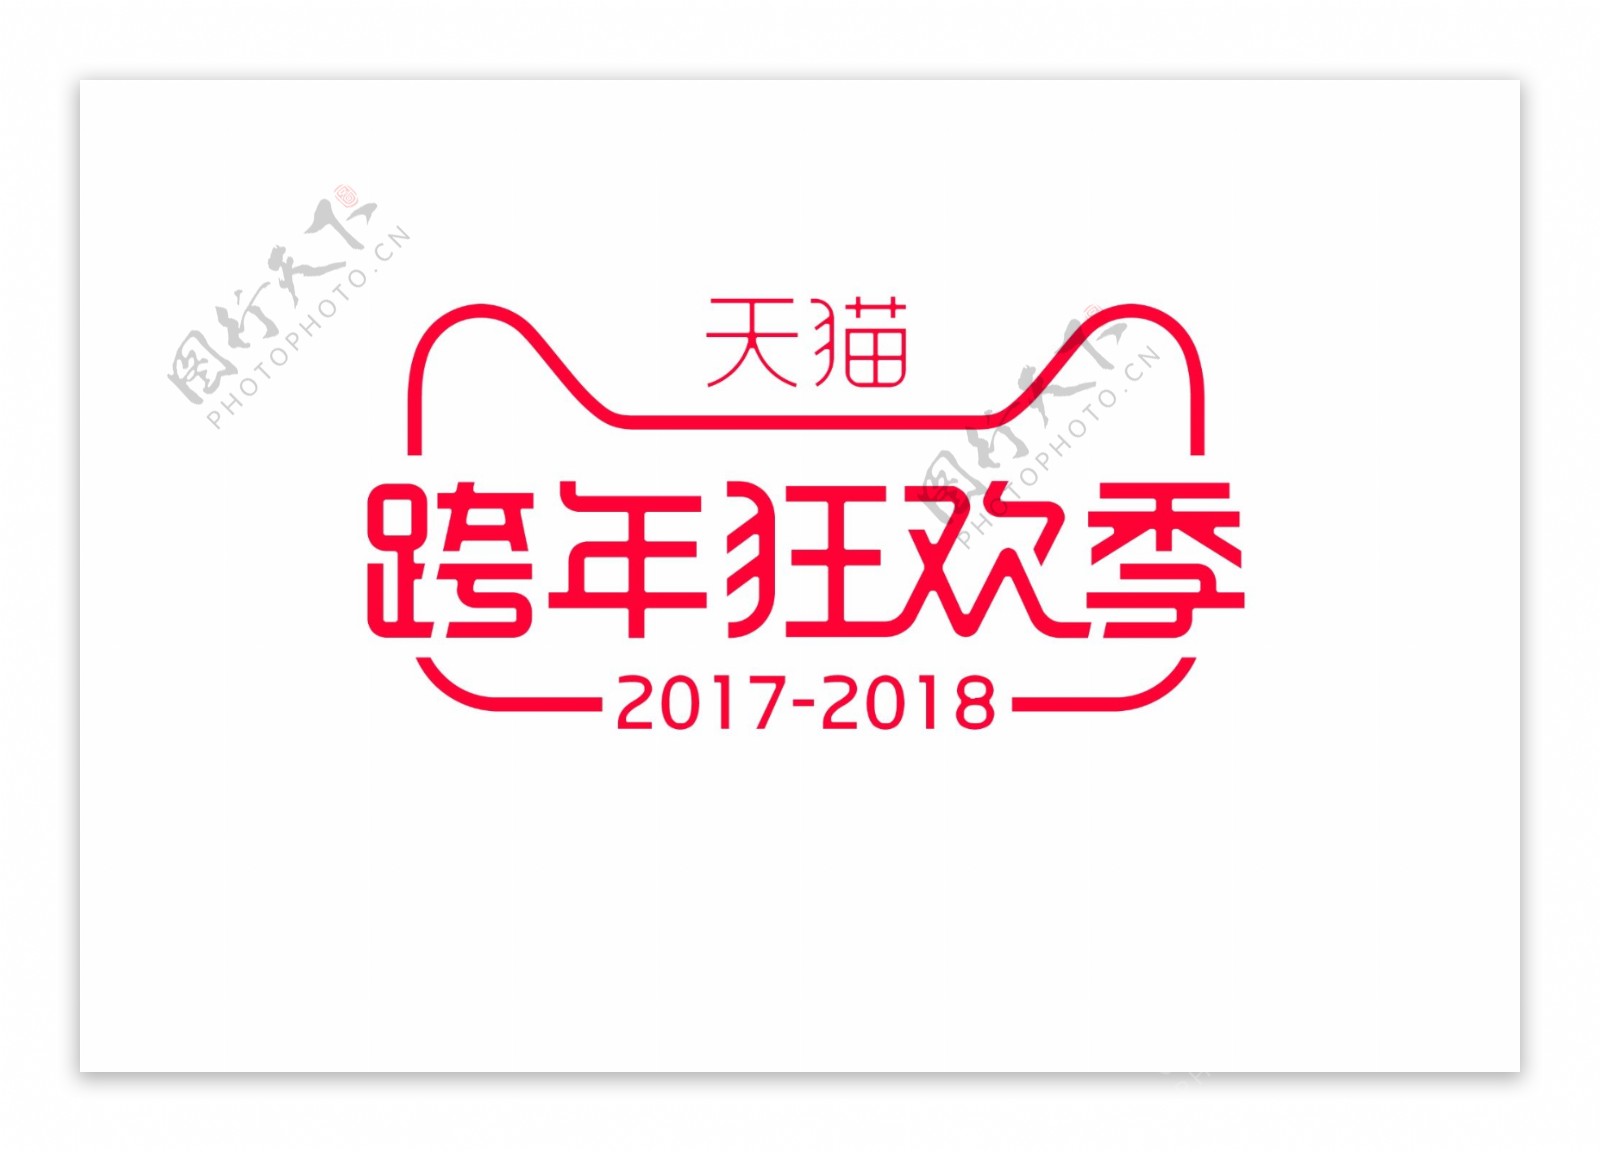 跨年狂欢季节logo